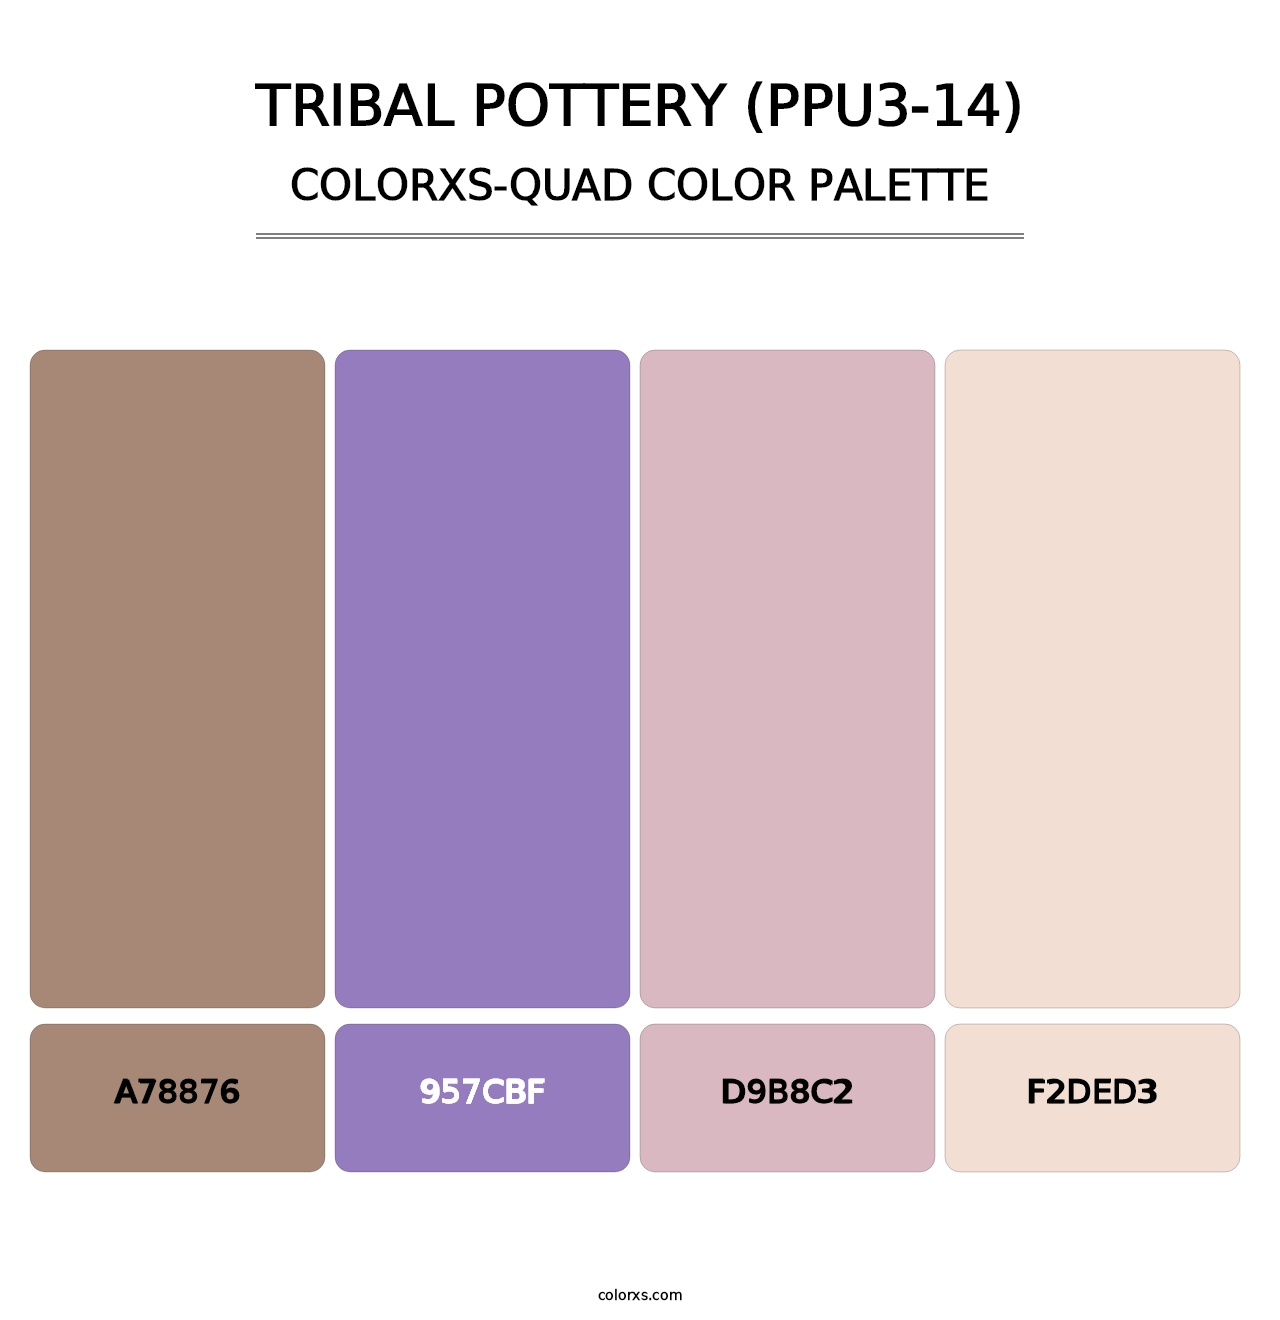 Tribal Pottery (PPU3-14) - Colorxs Quad Palette